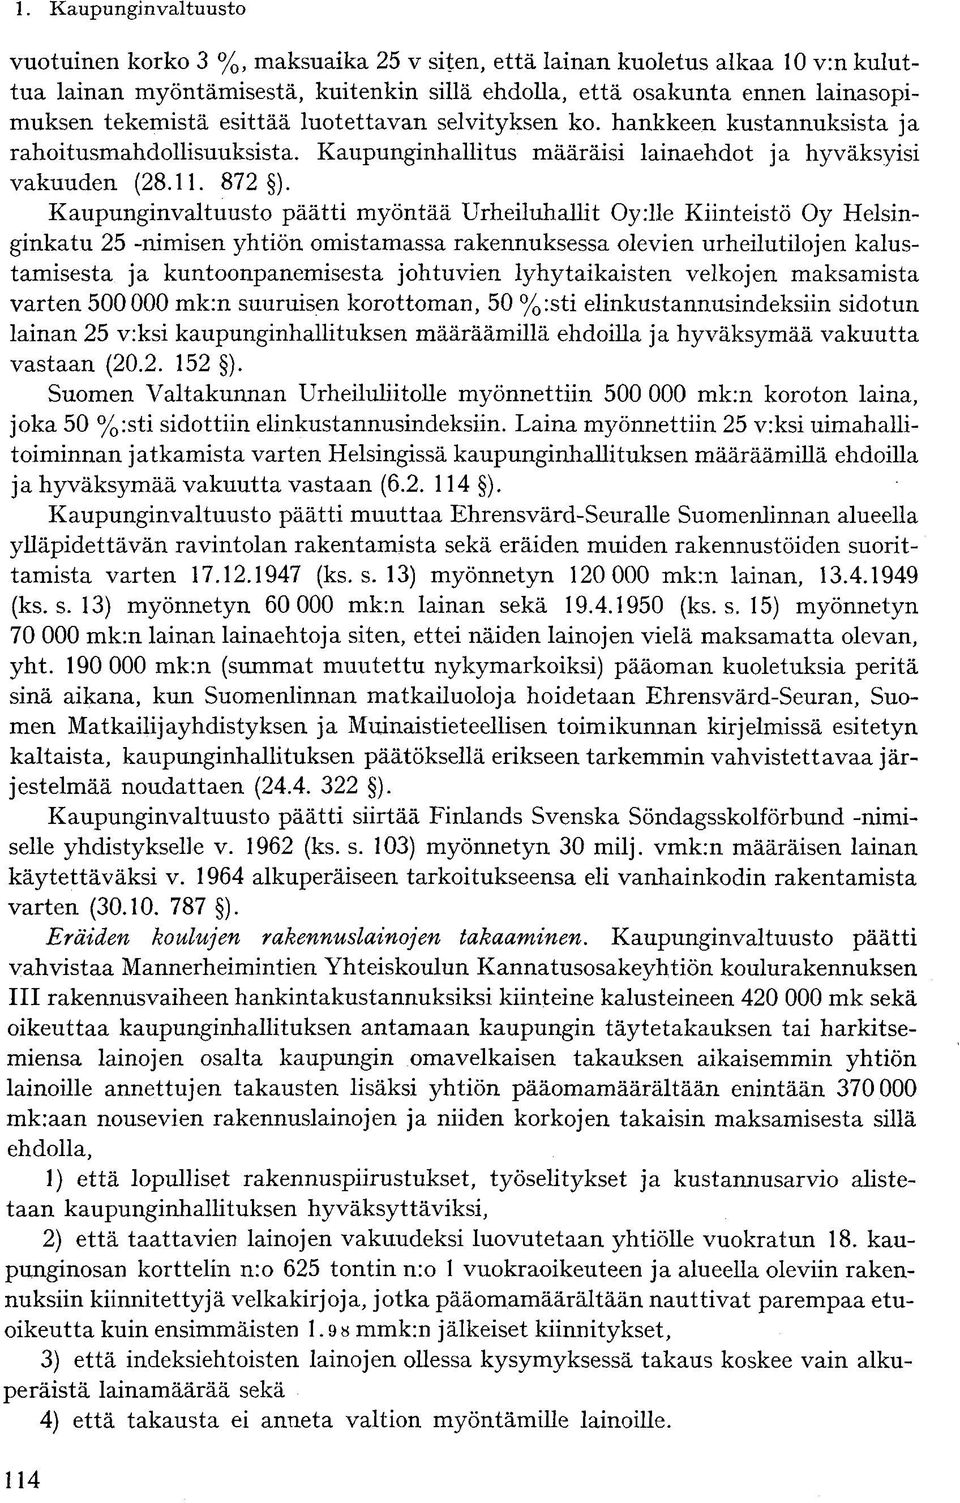 e Kiinteistö Oy Helsinginkatu 25 -nimisen yhtiön omistamassa rakennuksessa olevien urheilutilojen kalustamisesta ja kuntoonpanemisesta johtuvien lyhytaikaisten velkojen maksamista varten 500000 mk:n